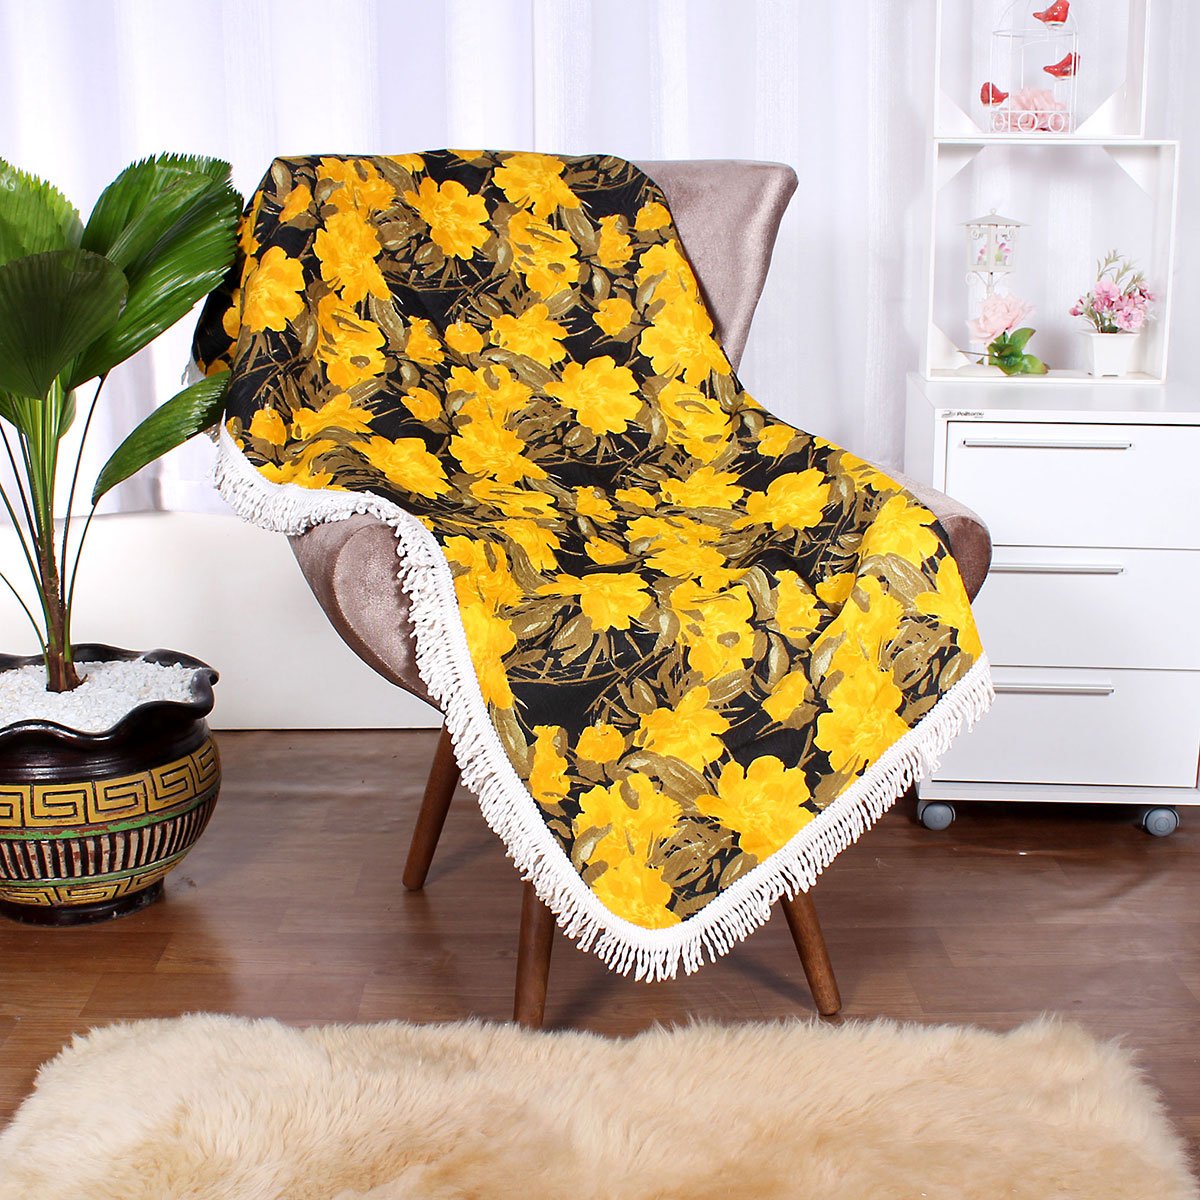 Jogo Manta de Sofá Floral Amarela 1,50m x 1,50m + 3 Almofadas Decorativas 45cm x 45cm com refil-Teci - 2